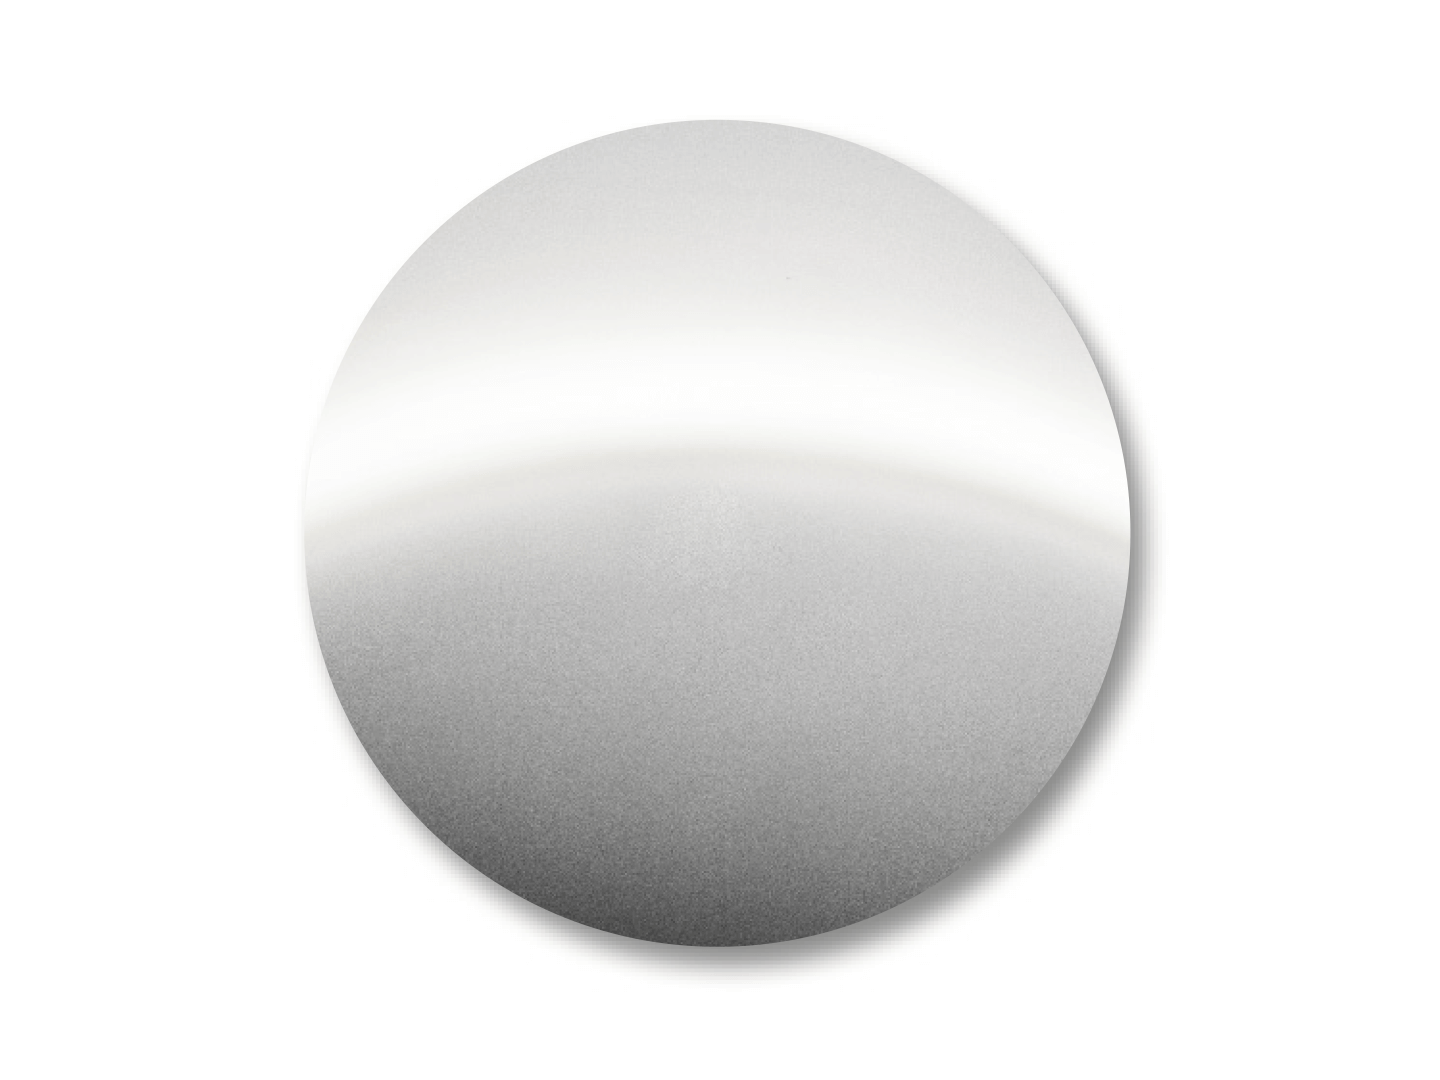 Exemplu de culoare pentru DuraVision Mirror Argintiu. 